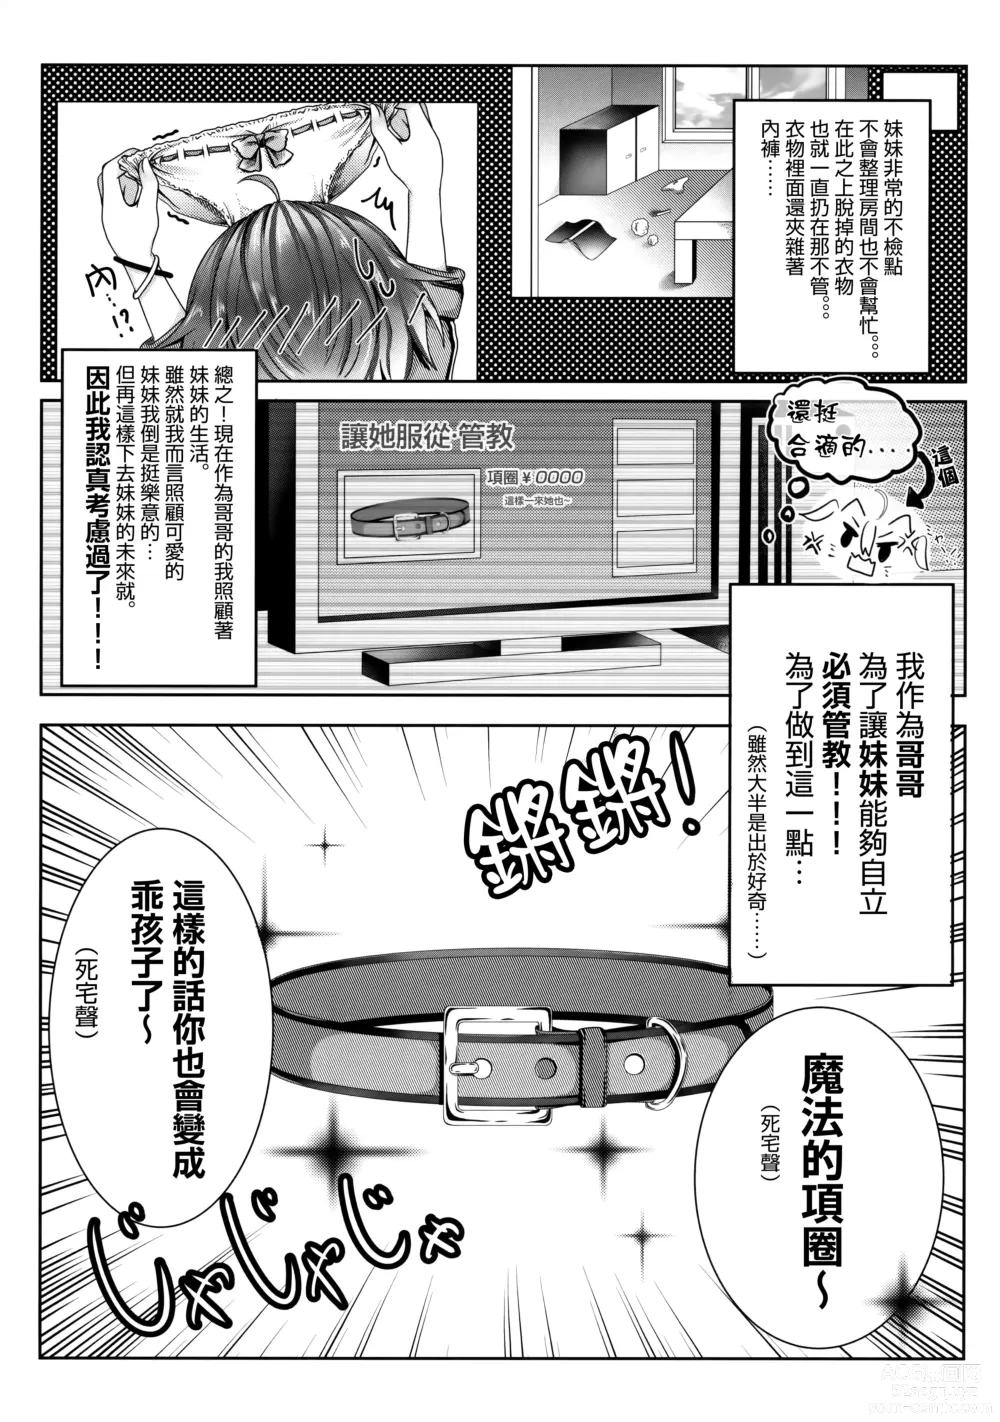 Page 4 of doujinshi Onii-chan wa Imouto o Shitsuketai